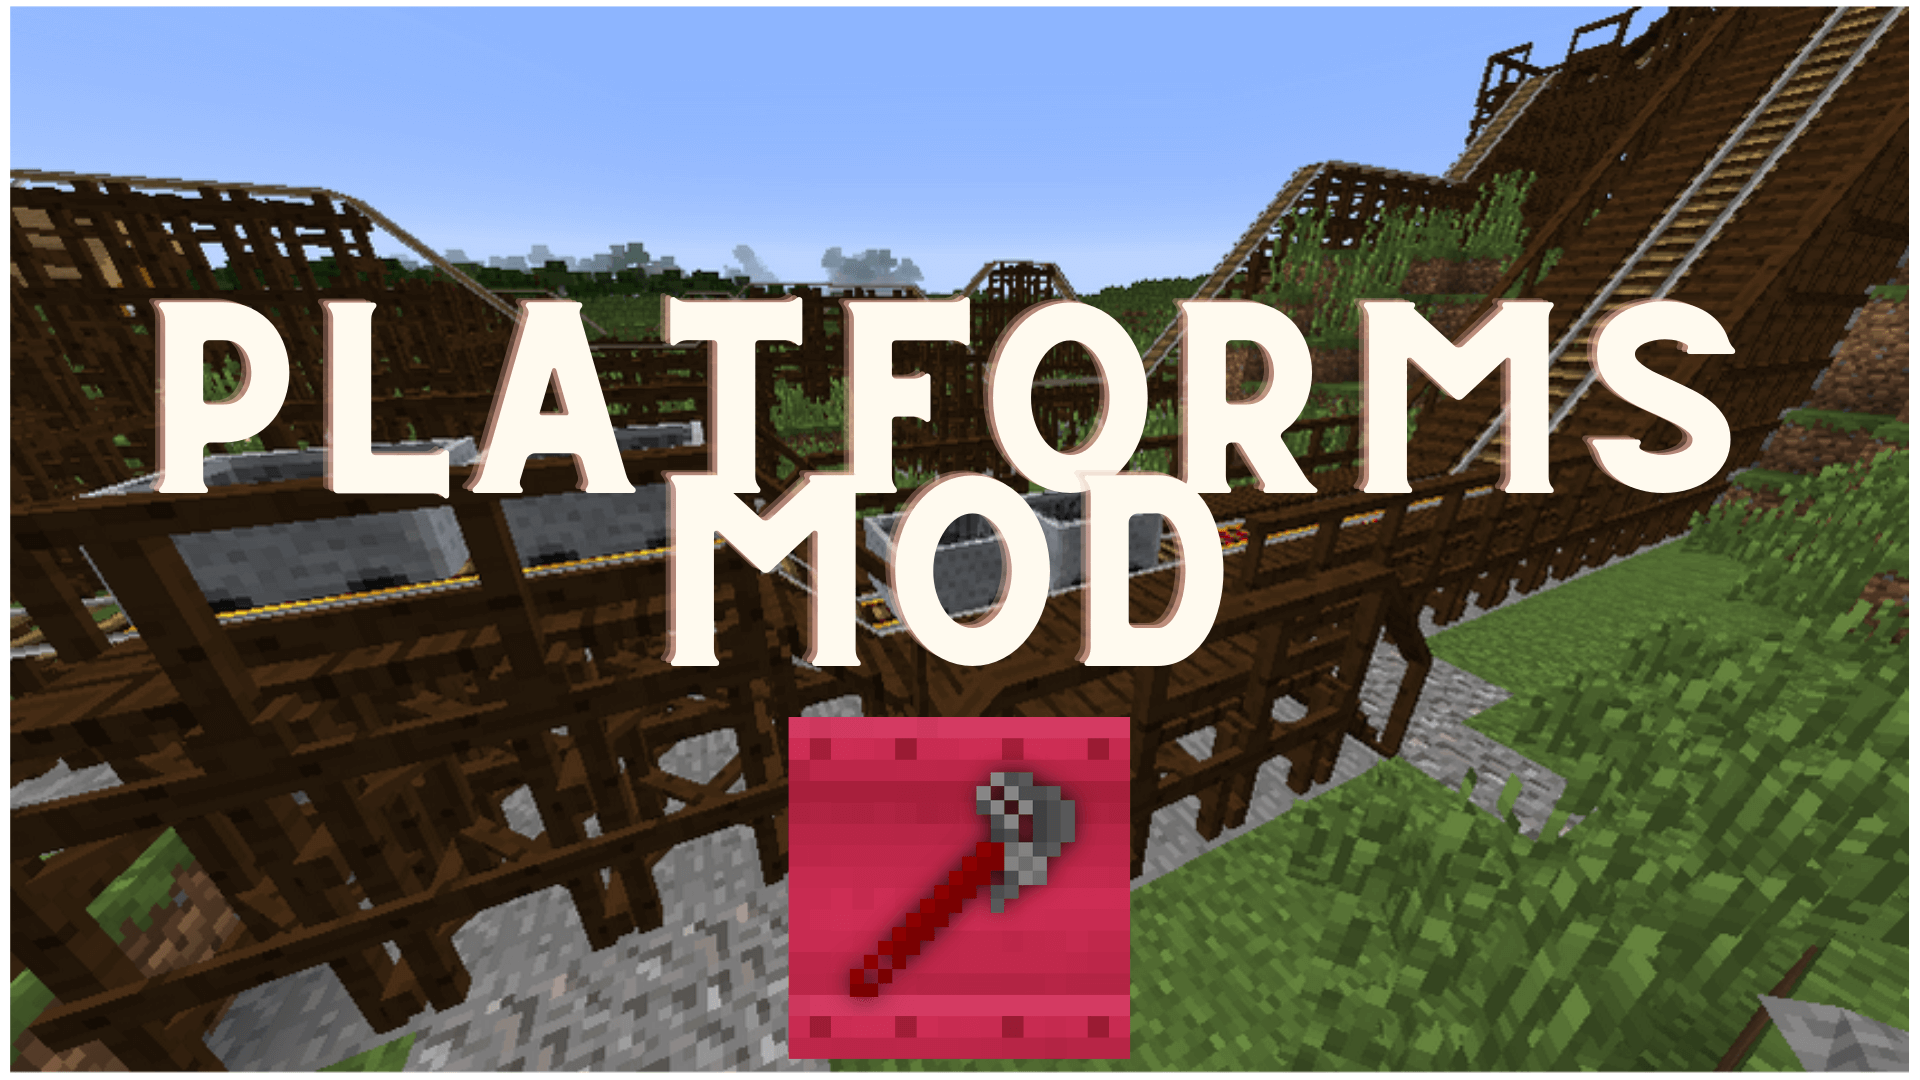 Platforms Mod